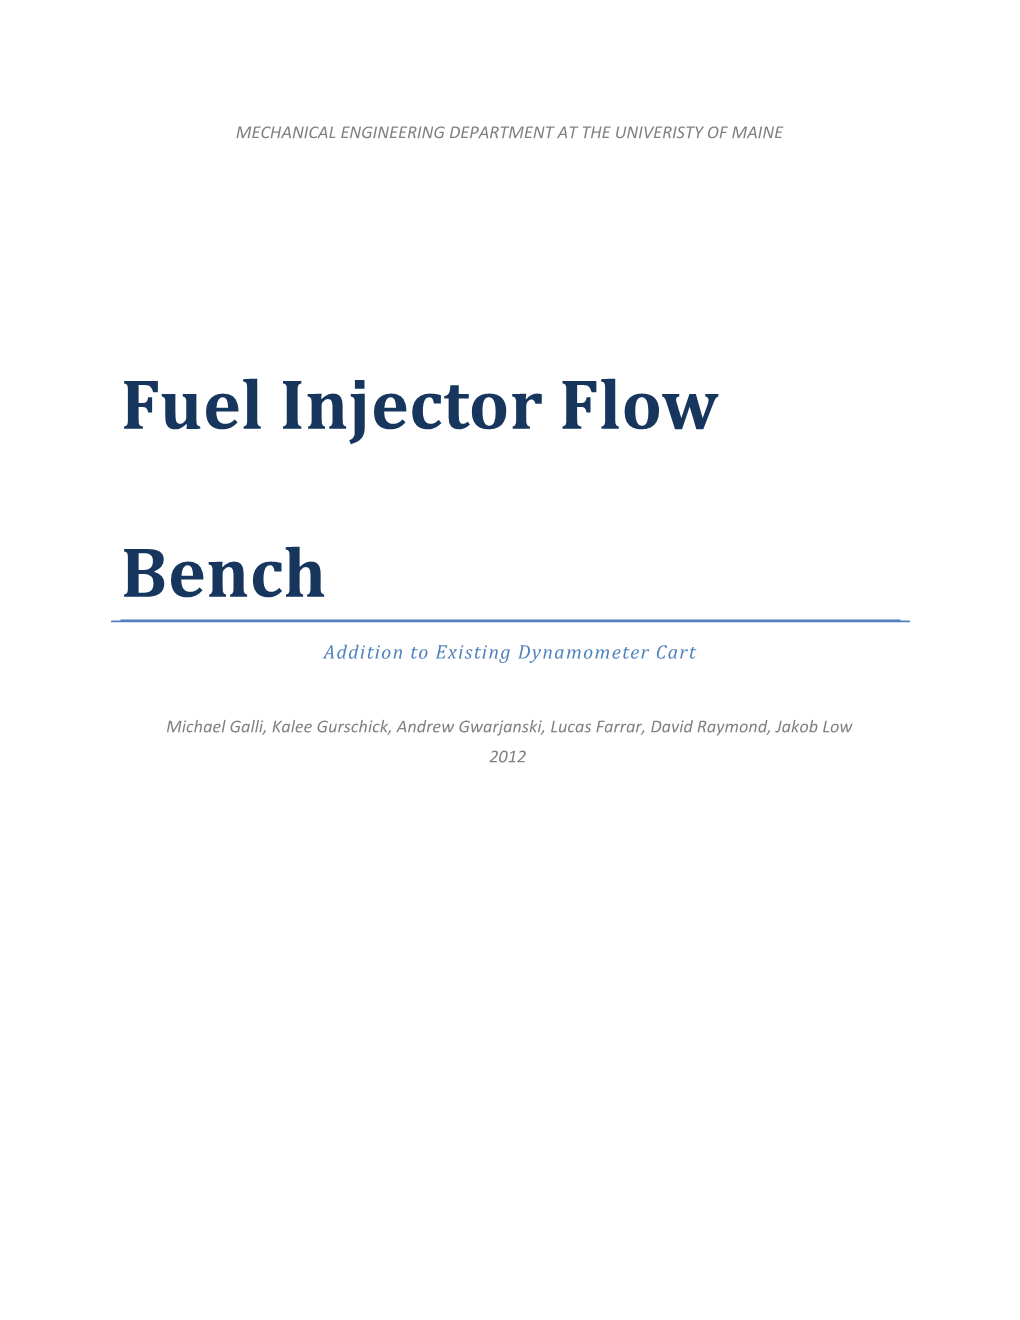 Fuel Injector Flow Bench